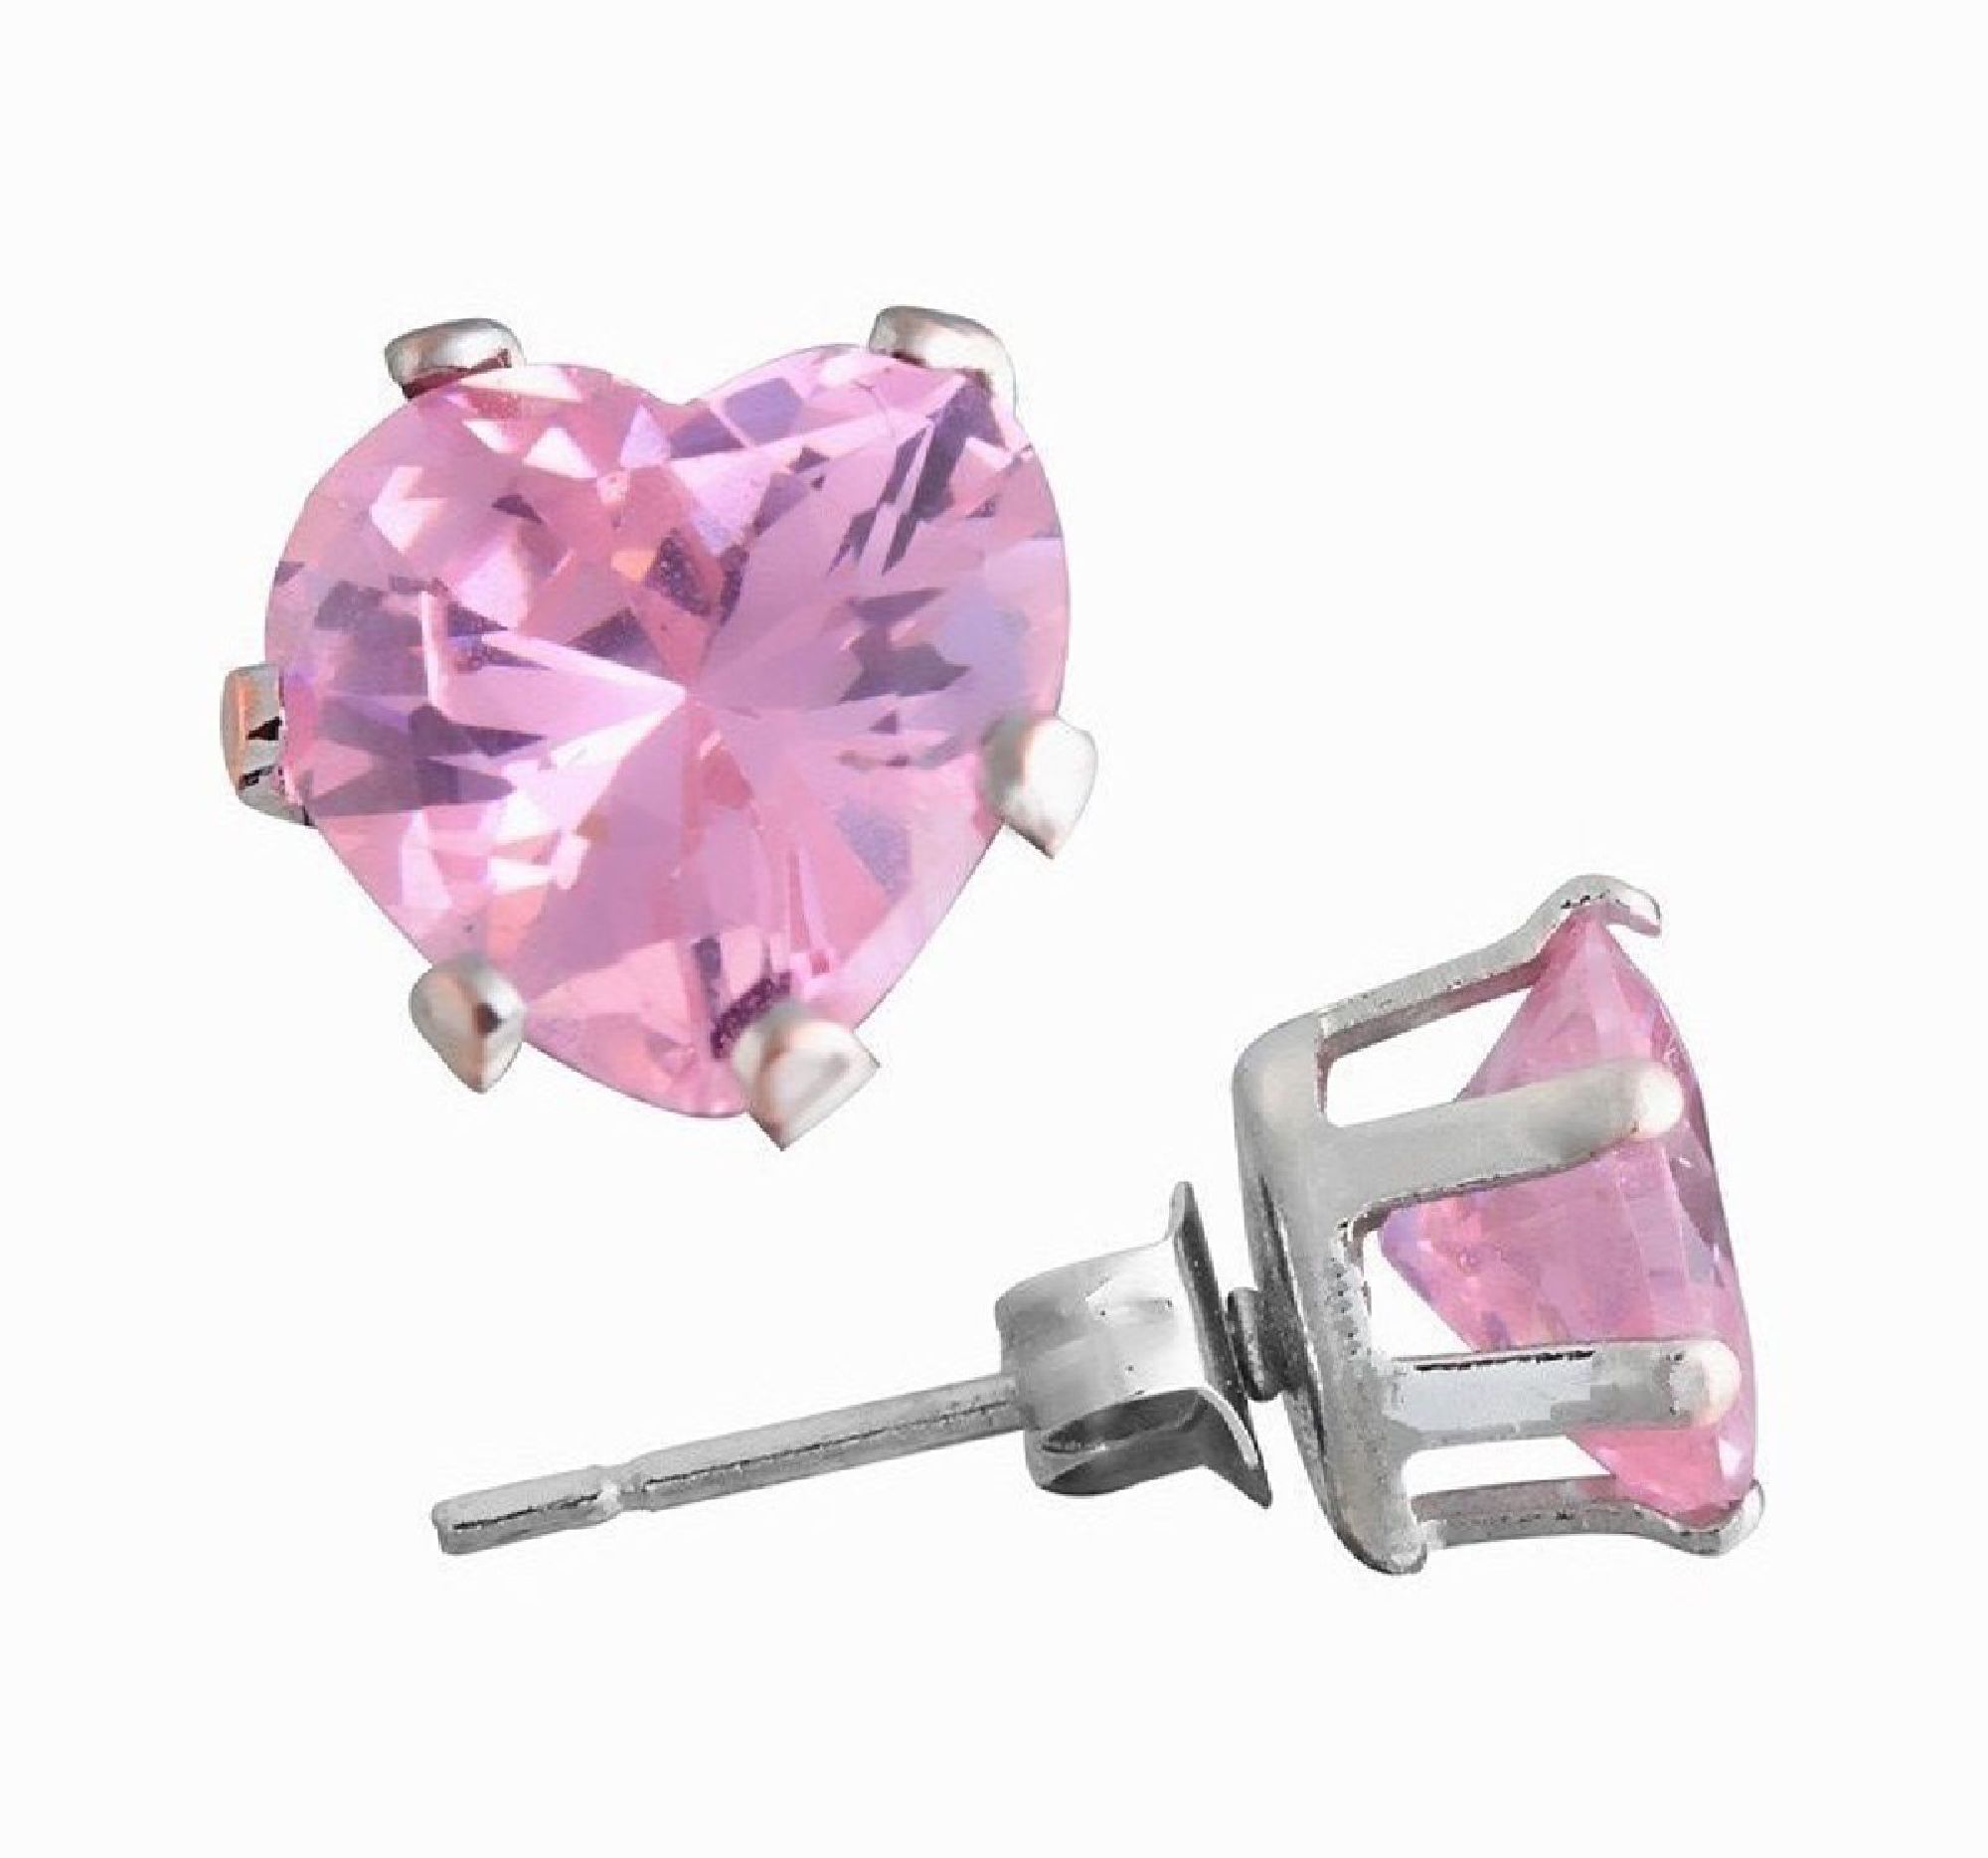 ParisJewelry.com 5 Carat Heart Shape Pink Diamond manmade Stud Earrings for Men in Sterling Silver Designed in France